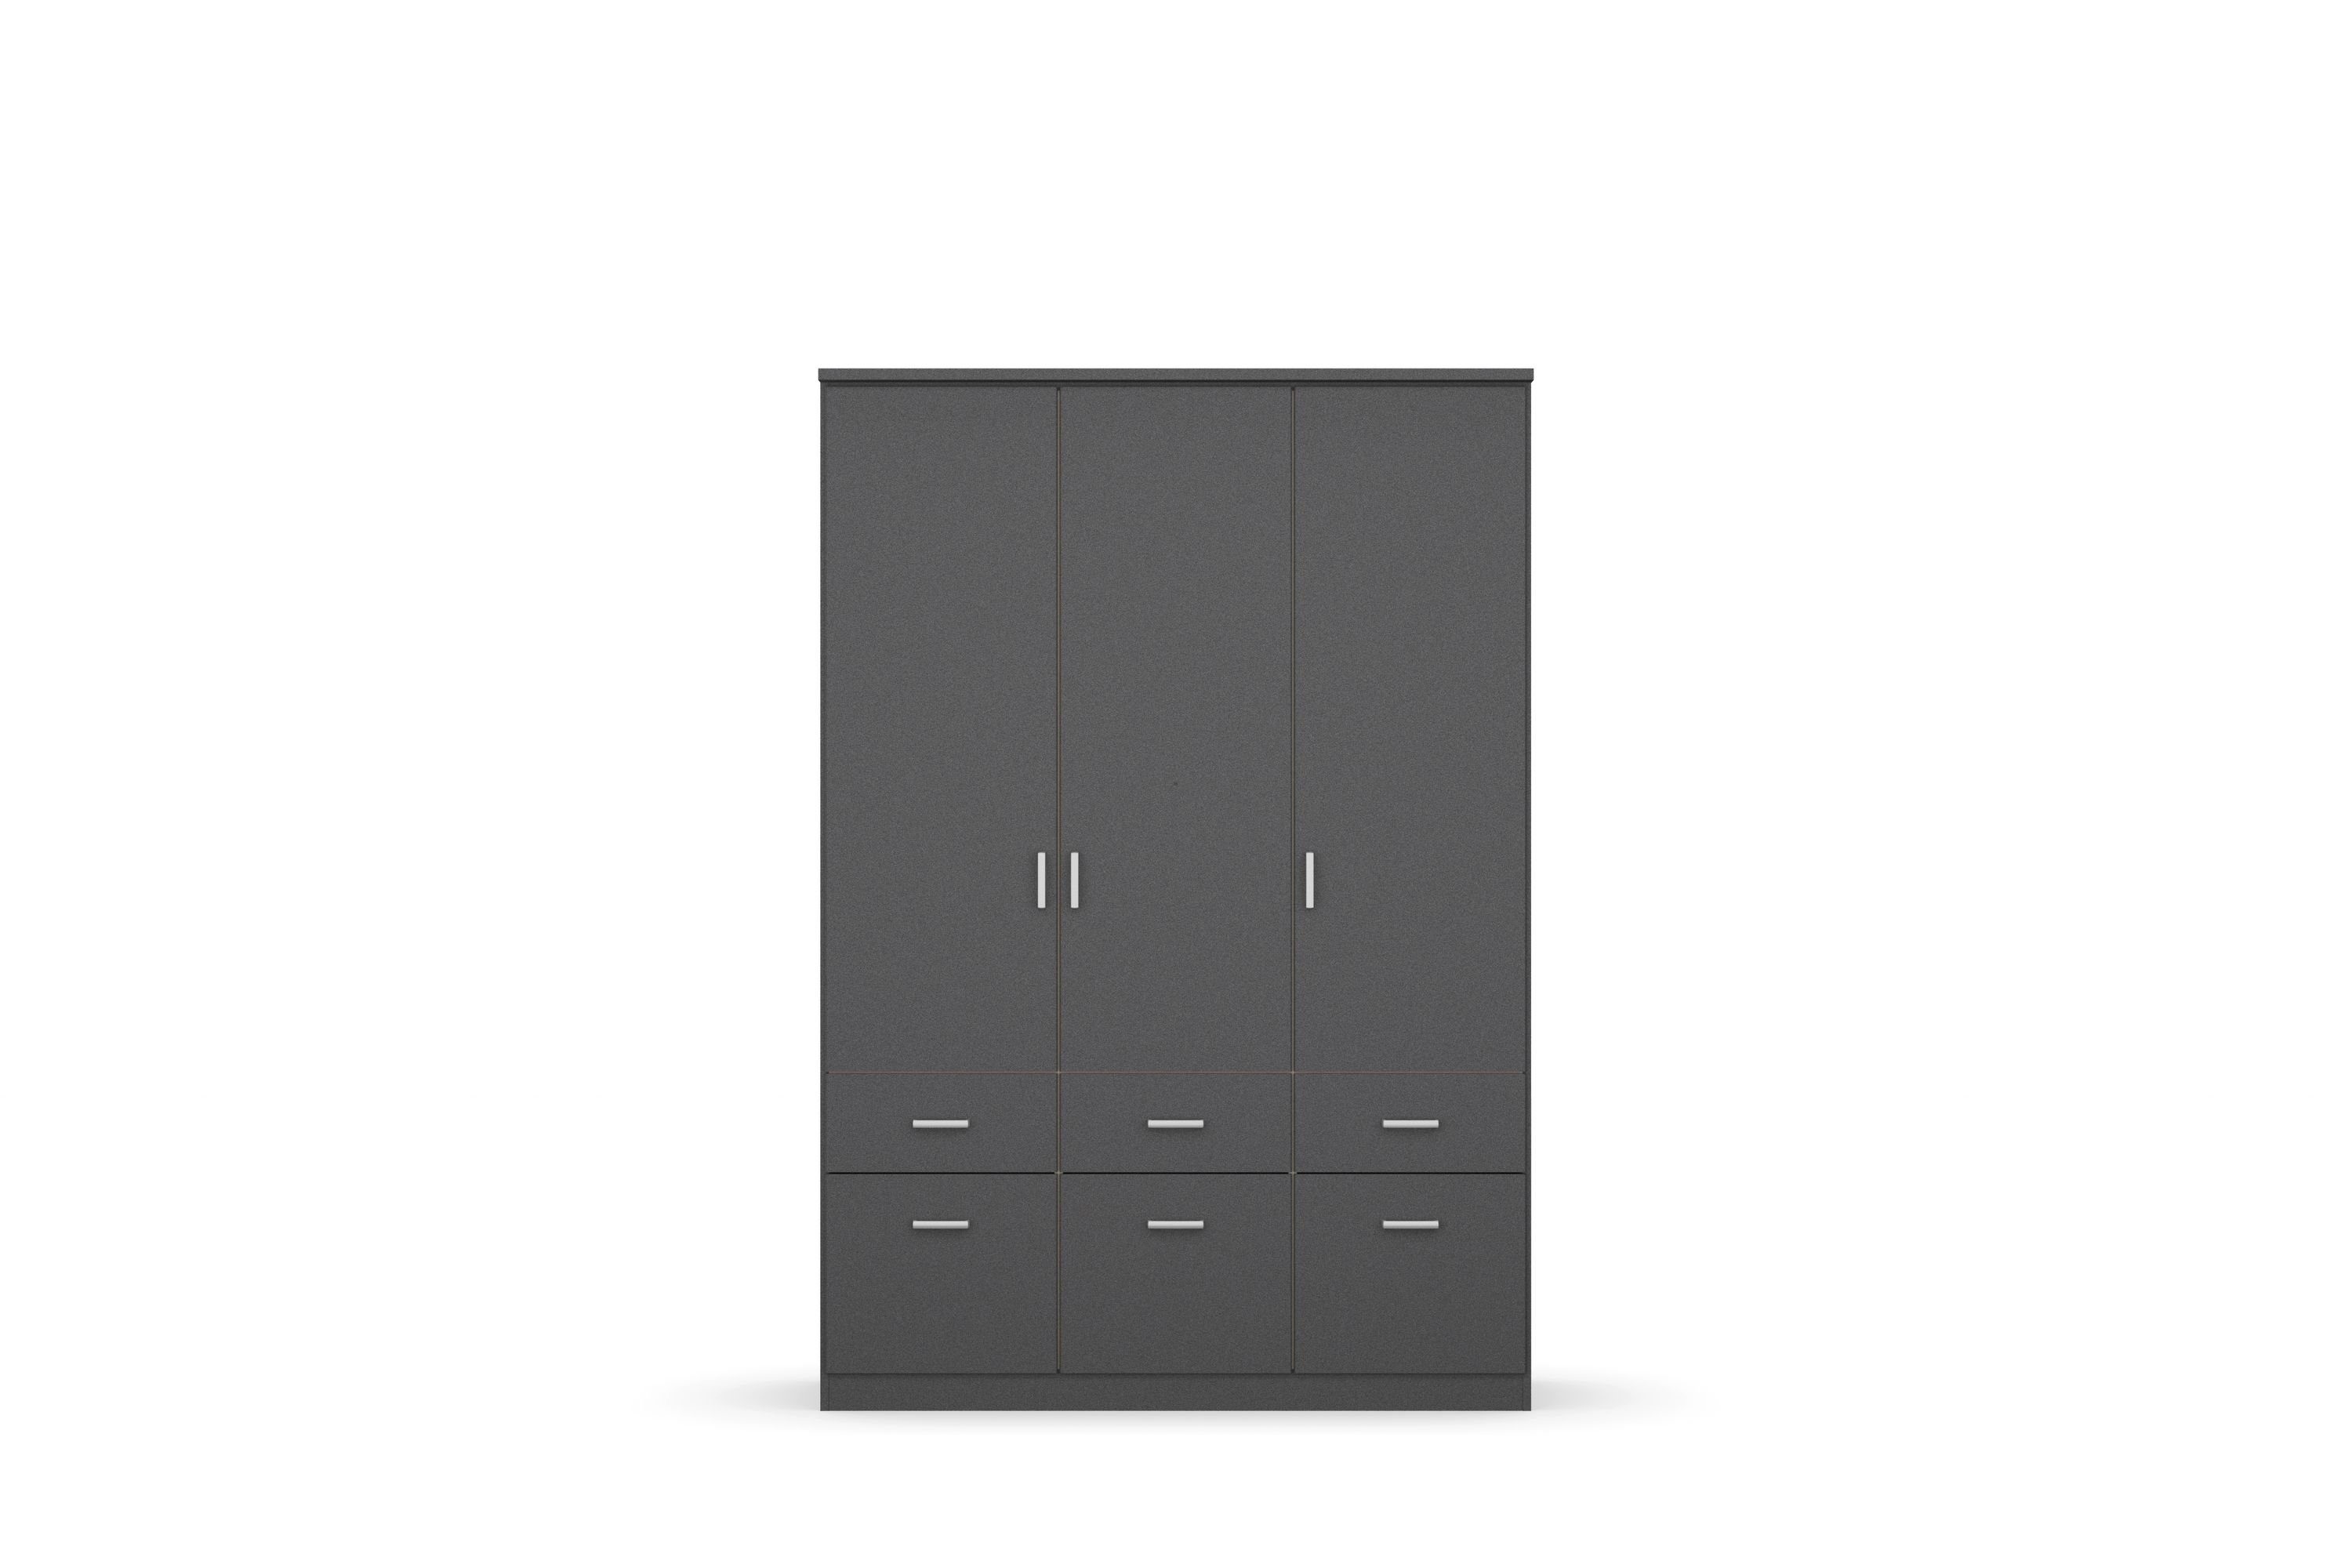 inkl. 3 Dilan Kindermöbel grau-metallic Türen 6 Schubladen 24 Schranksystem 12